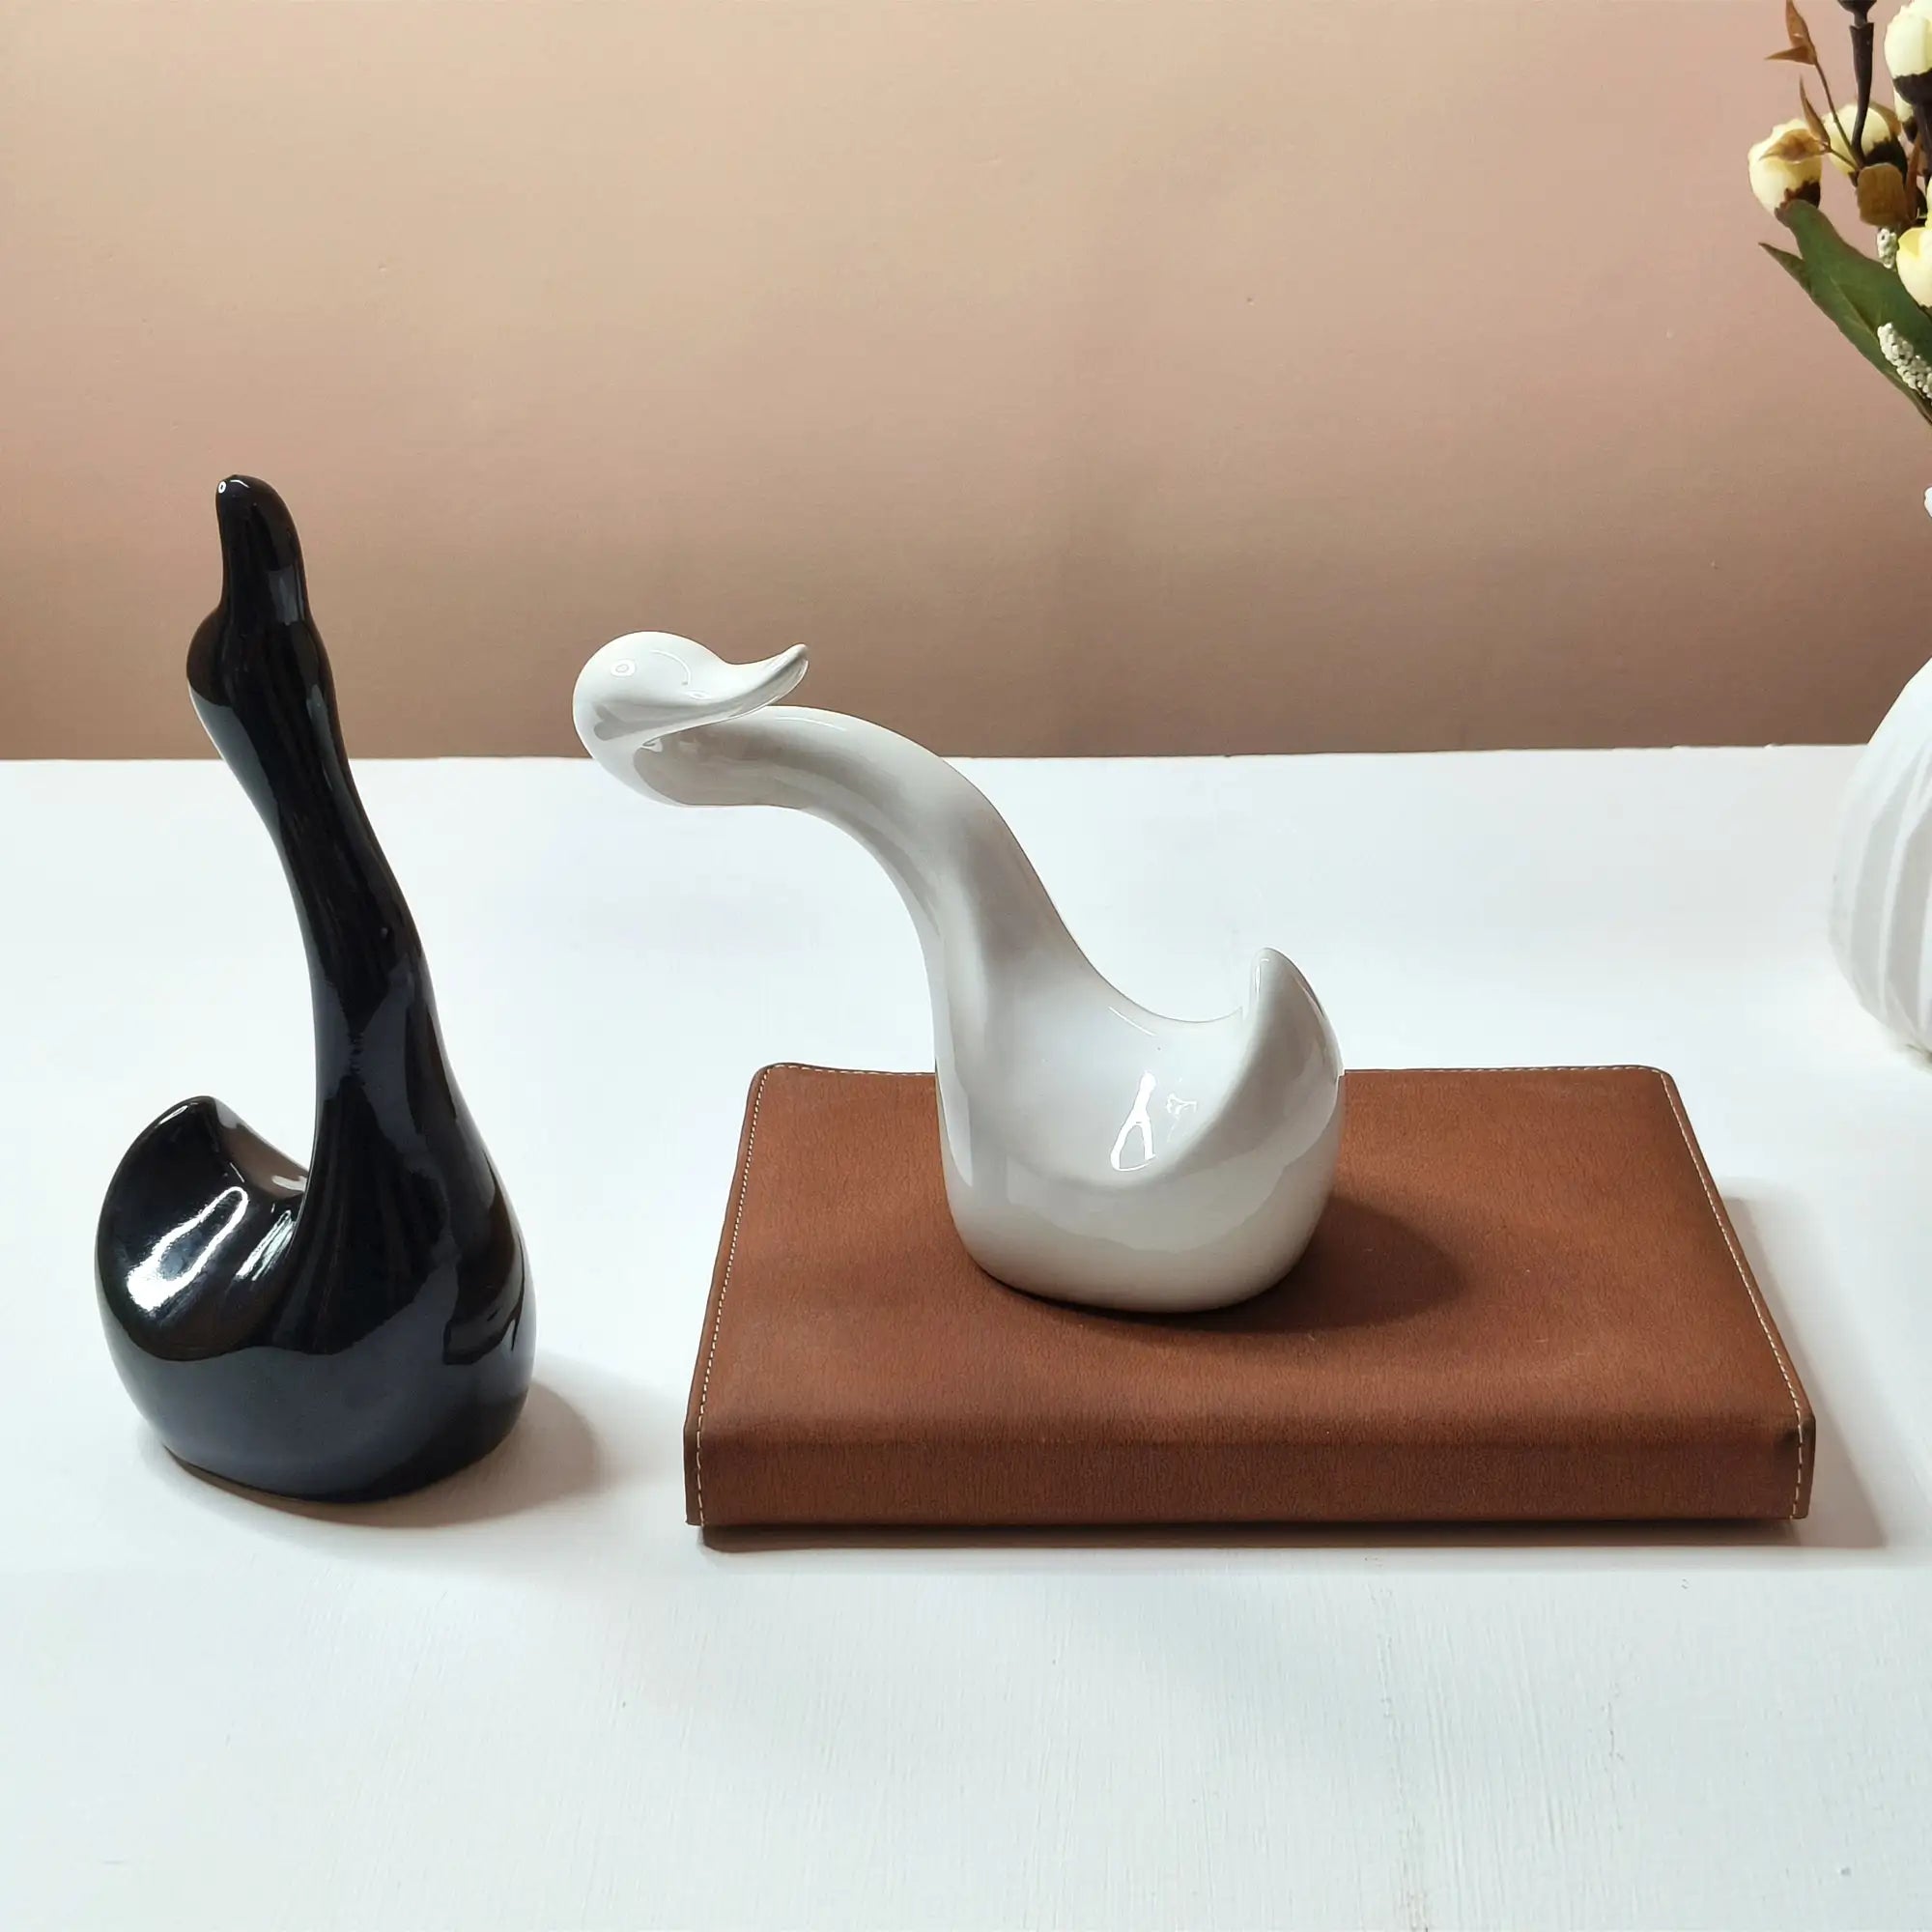 Swan Hugging Ceramic Figurine Decor Item